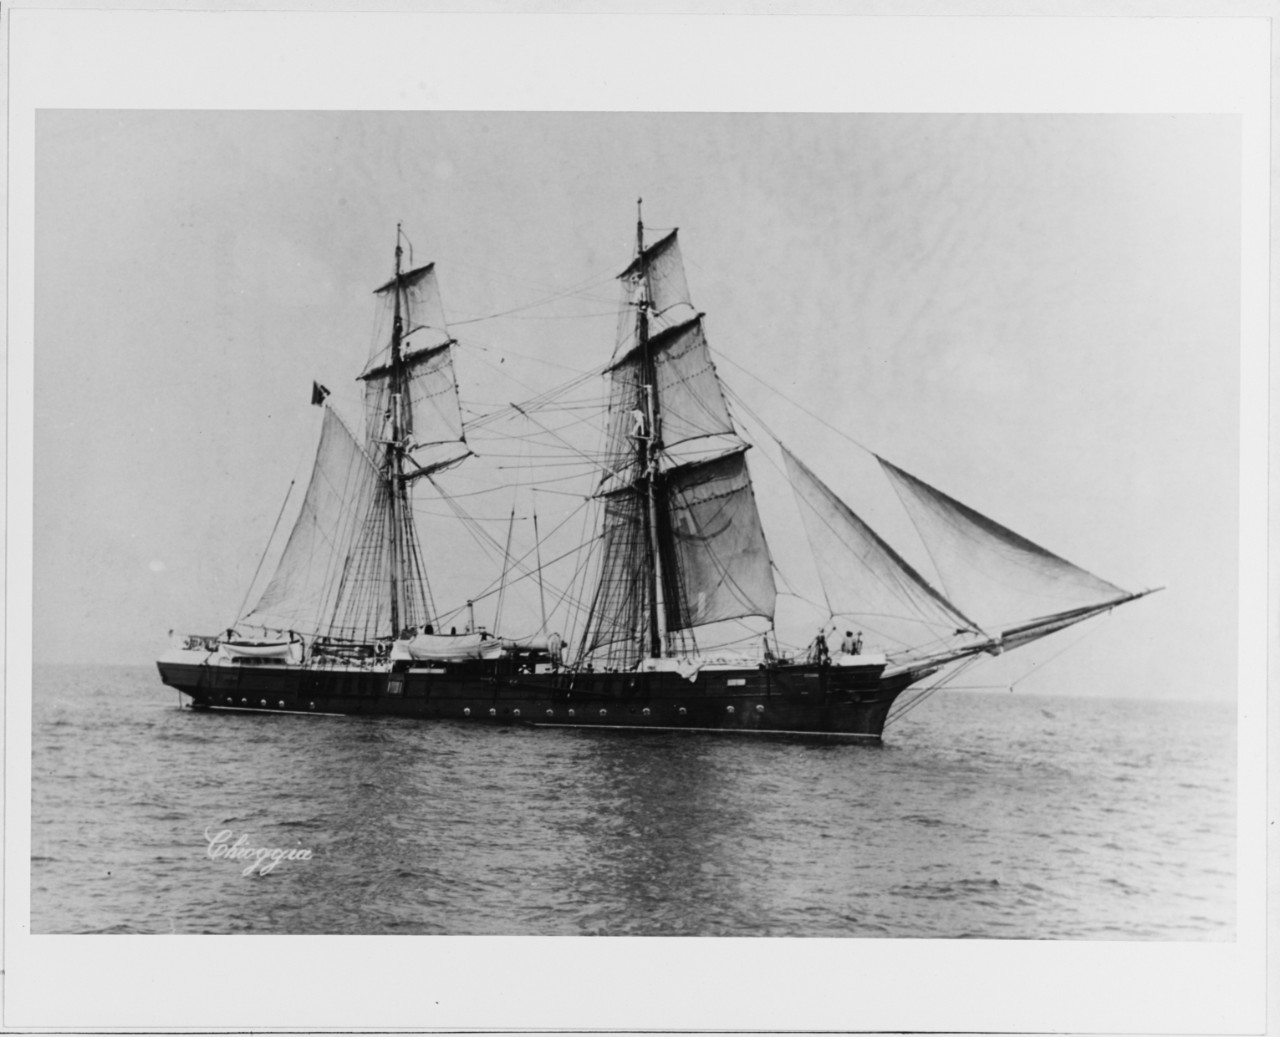 CHIOGGIA (Italian school ship, 1877)